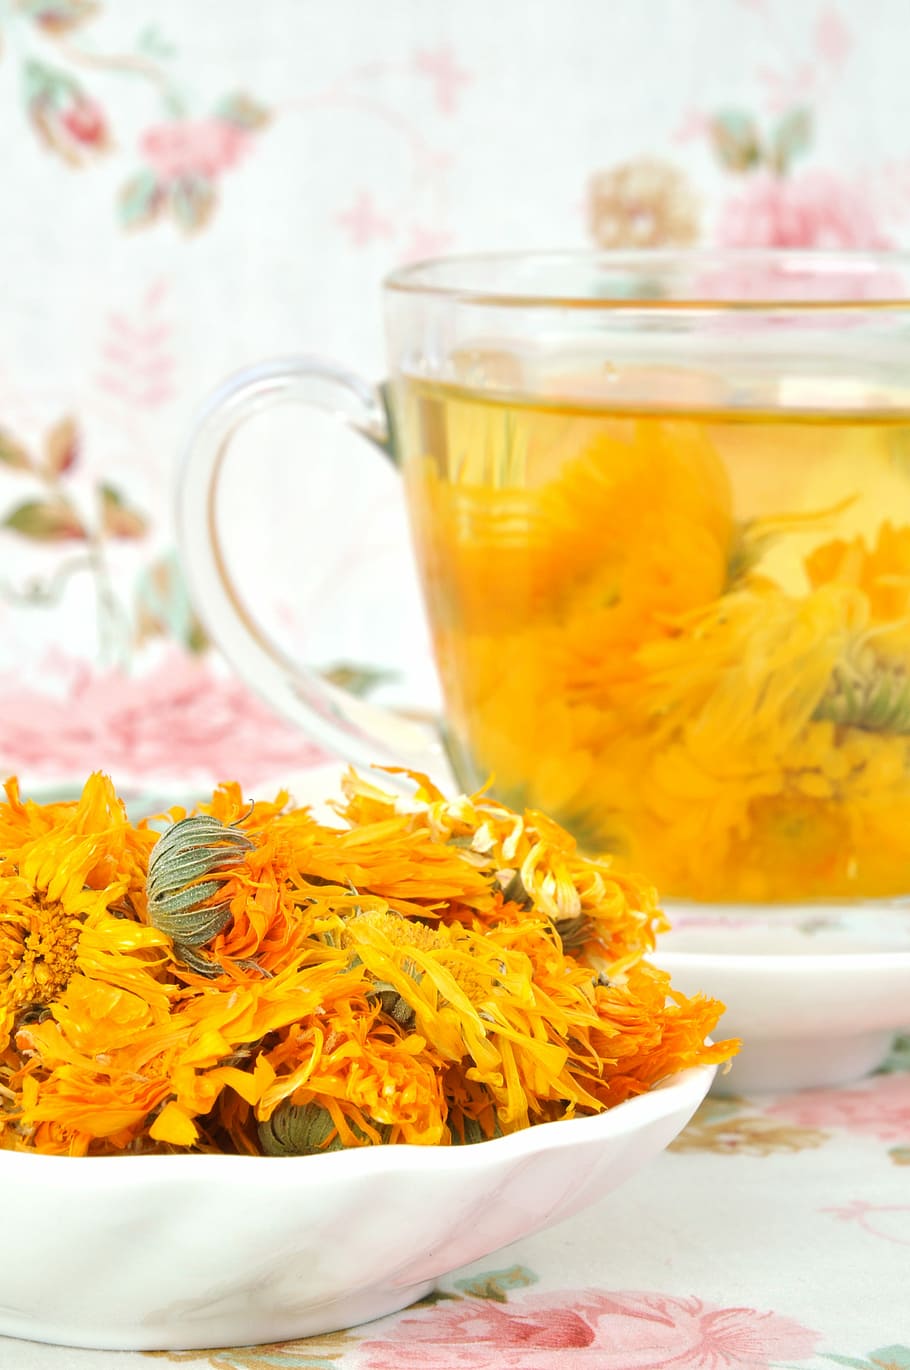 té, nombre del té, bebida de té, crisantemo, Frescura, comida y bebida, flor, planta floreciente, primer plano, refresco